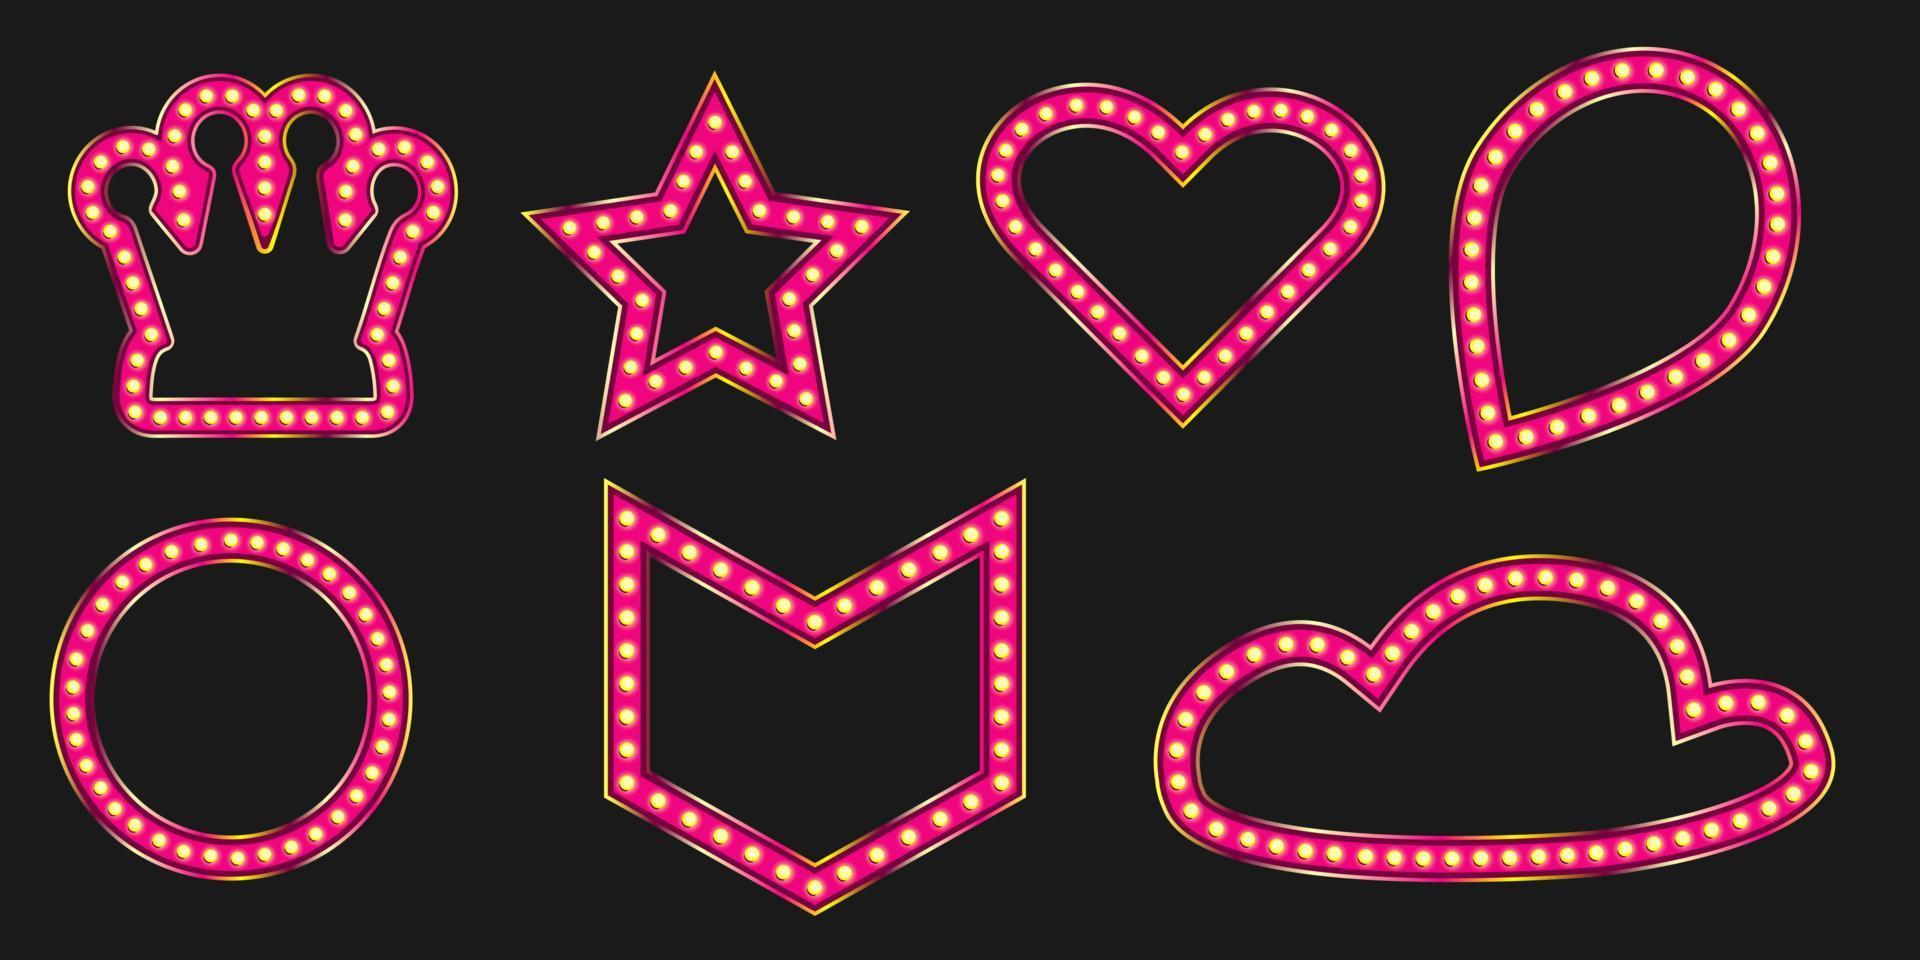 insignia brillante de la marquesina de la corona rosada. Banner de marcos de viernes negro para el diseño de eventos de lujo. Pin de luz con figuras de estrellas y corazones. vector